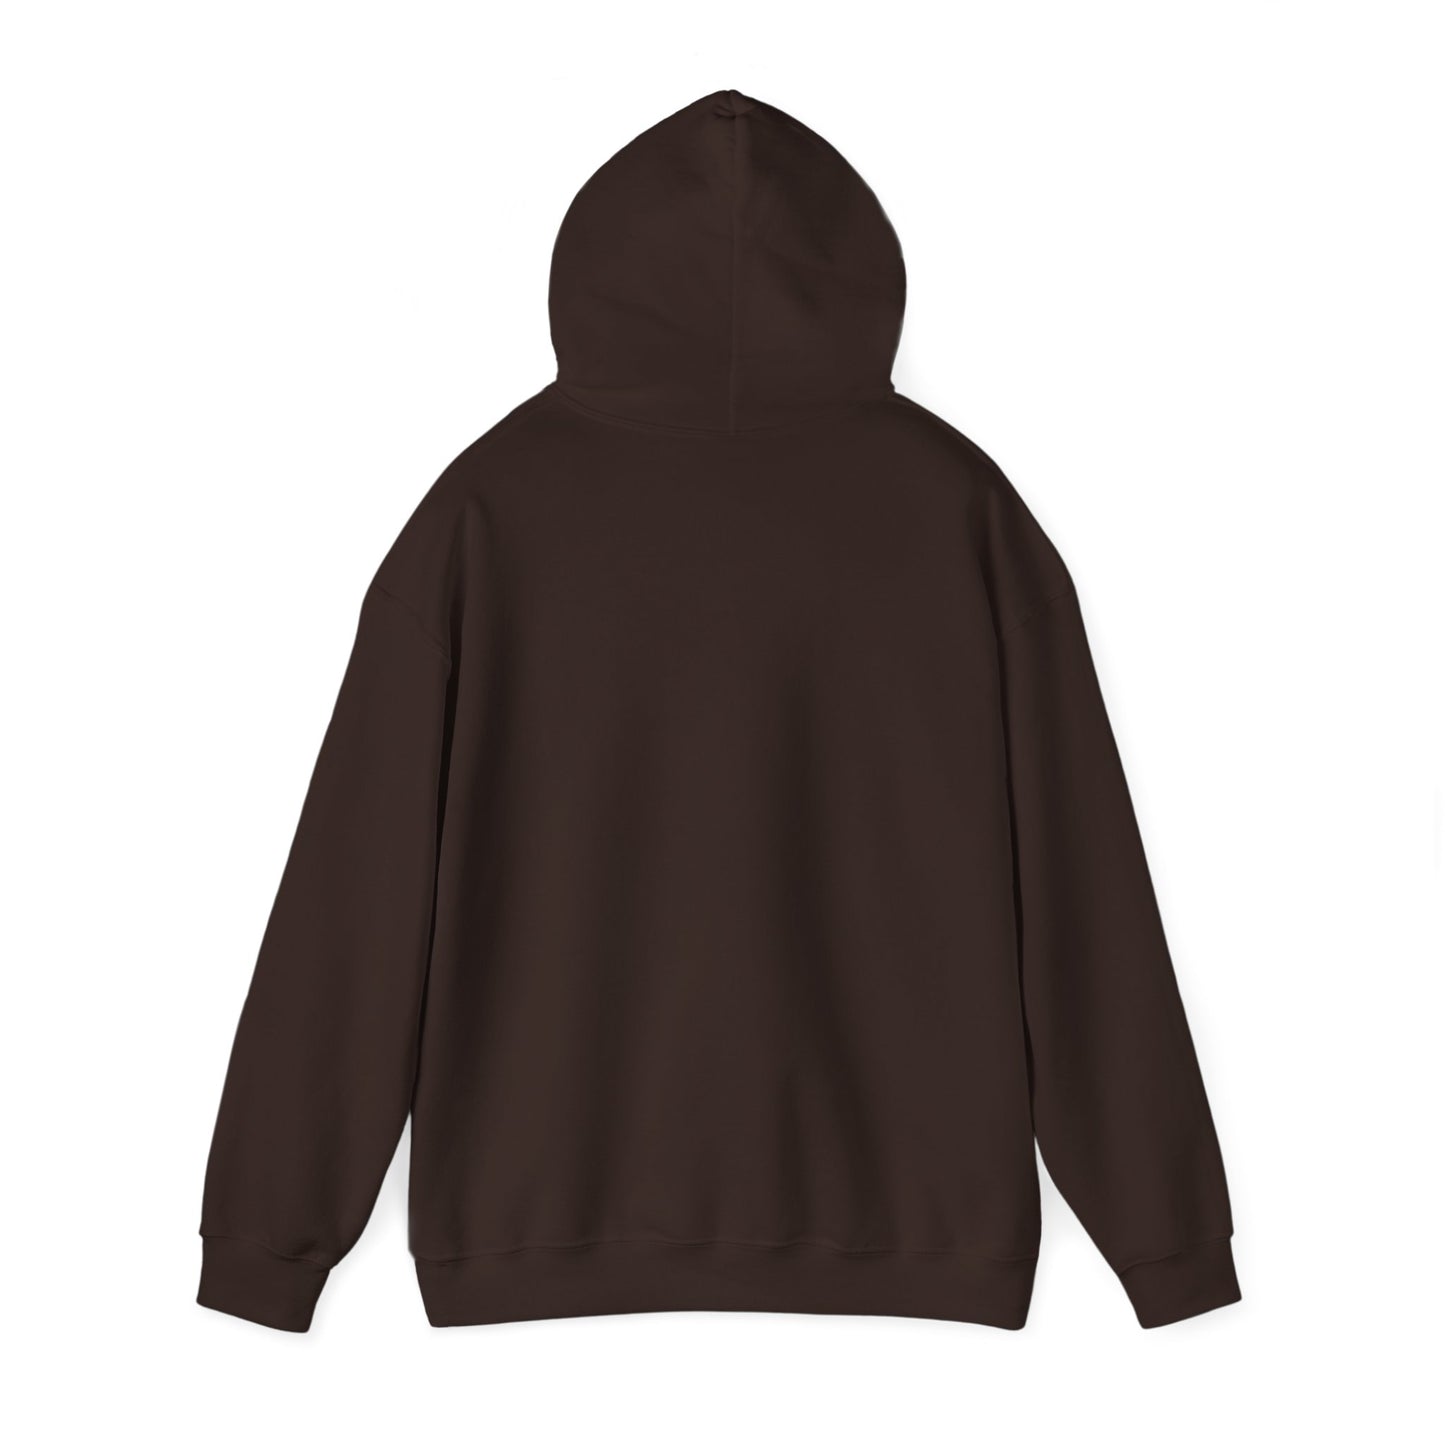 Inspire Wear Crested Unisex Heavy Blend™ Hooded Sweatshirt